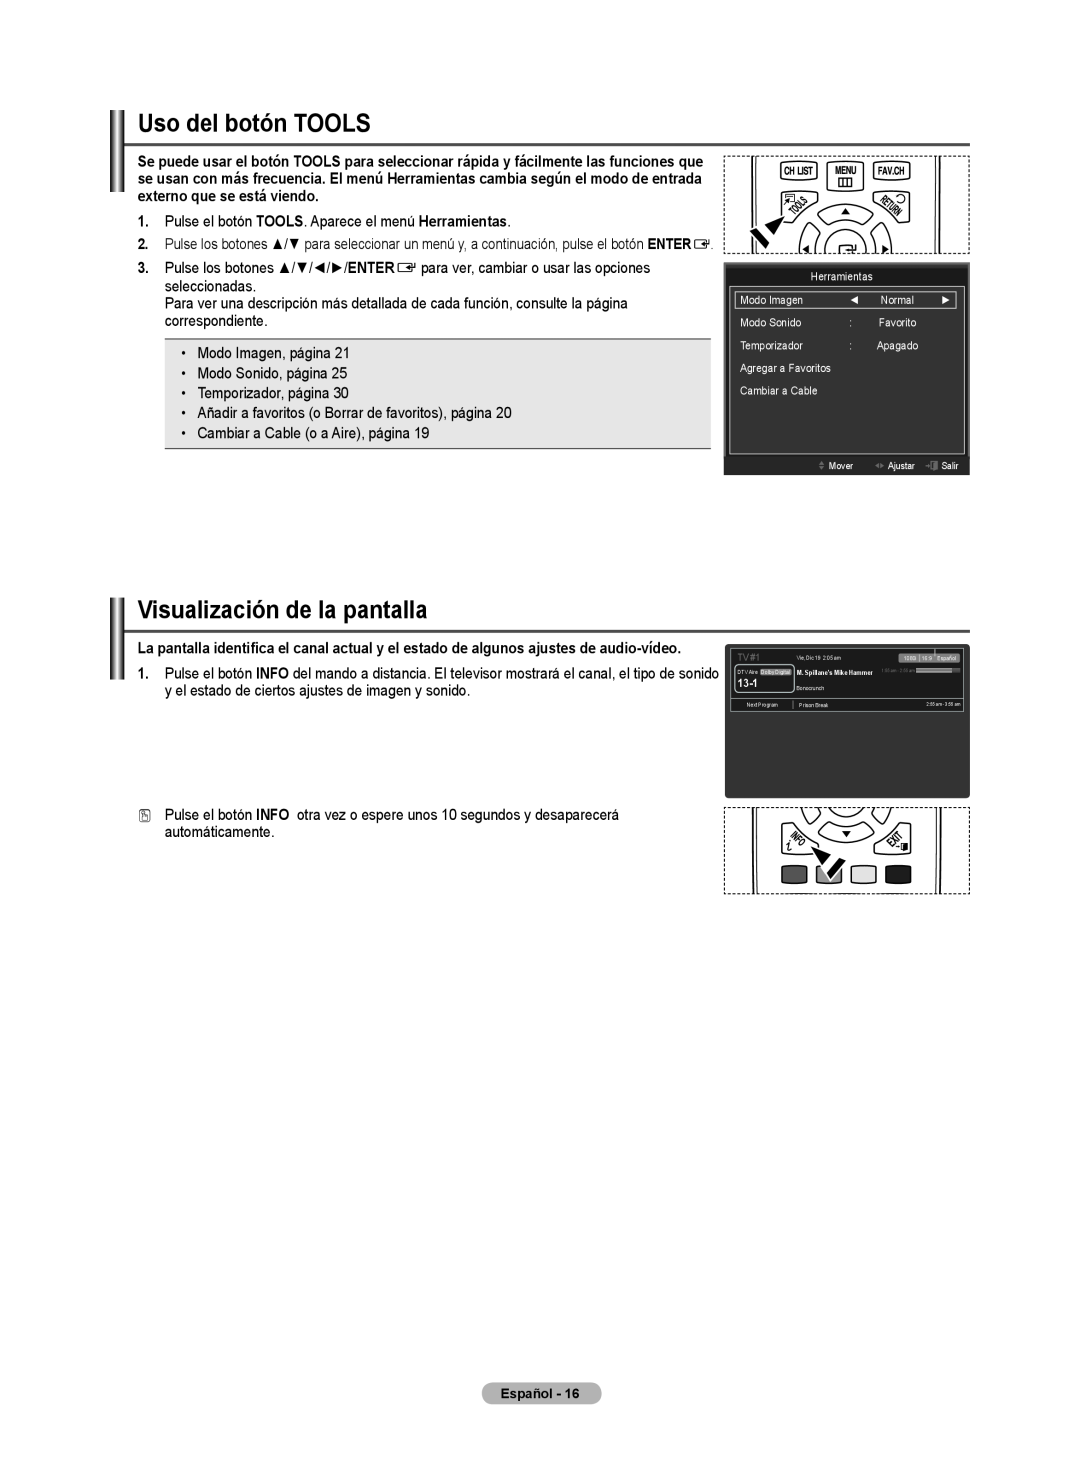 Samsung BN68-02426A-00 user manual Uso del botón TOOLS, Visualización de la pantalla 